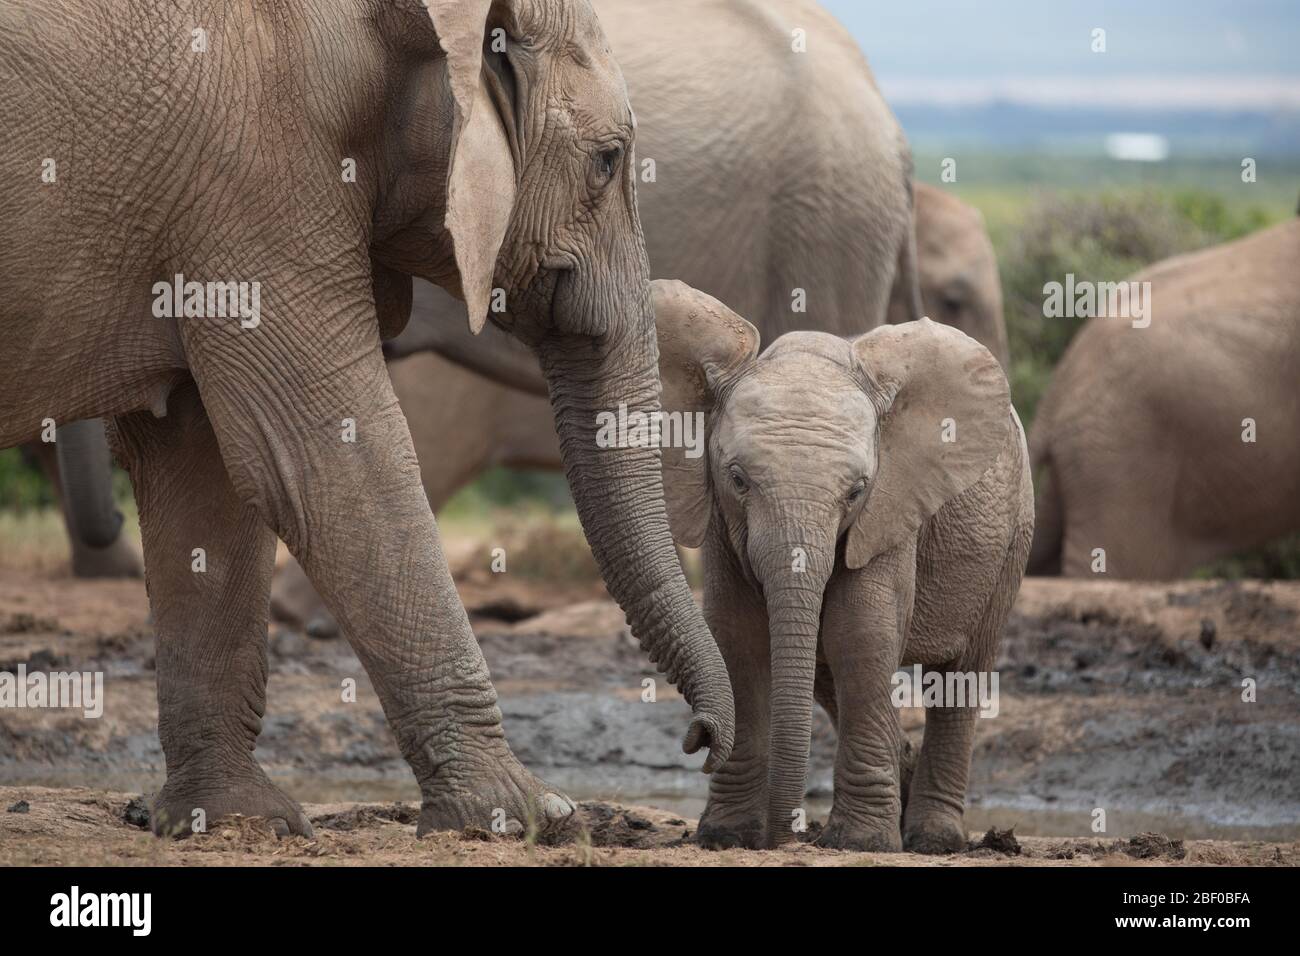 Une famille d'éléphants d'Afrique, Loxodonta africana, bénéficie d'un trou d'eau pour boire et se rafraîchir dans le parc national Addo Elephant, Port Elizabeth, Afrique du Sud Banque D'Images